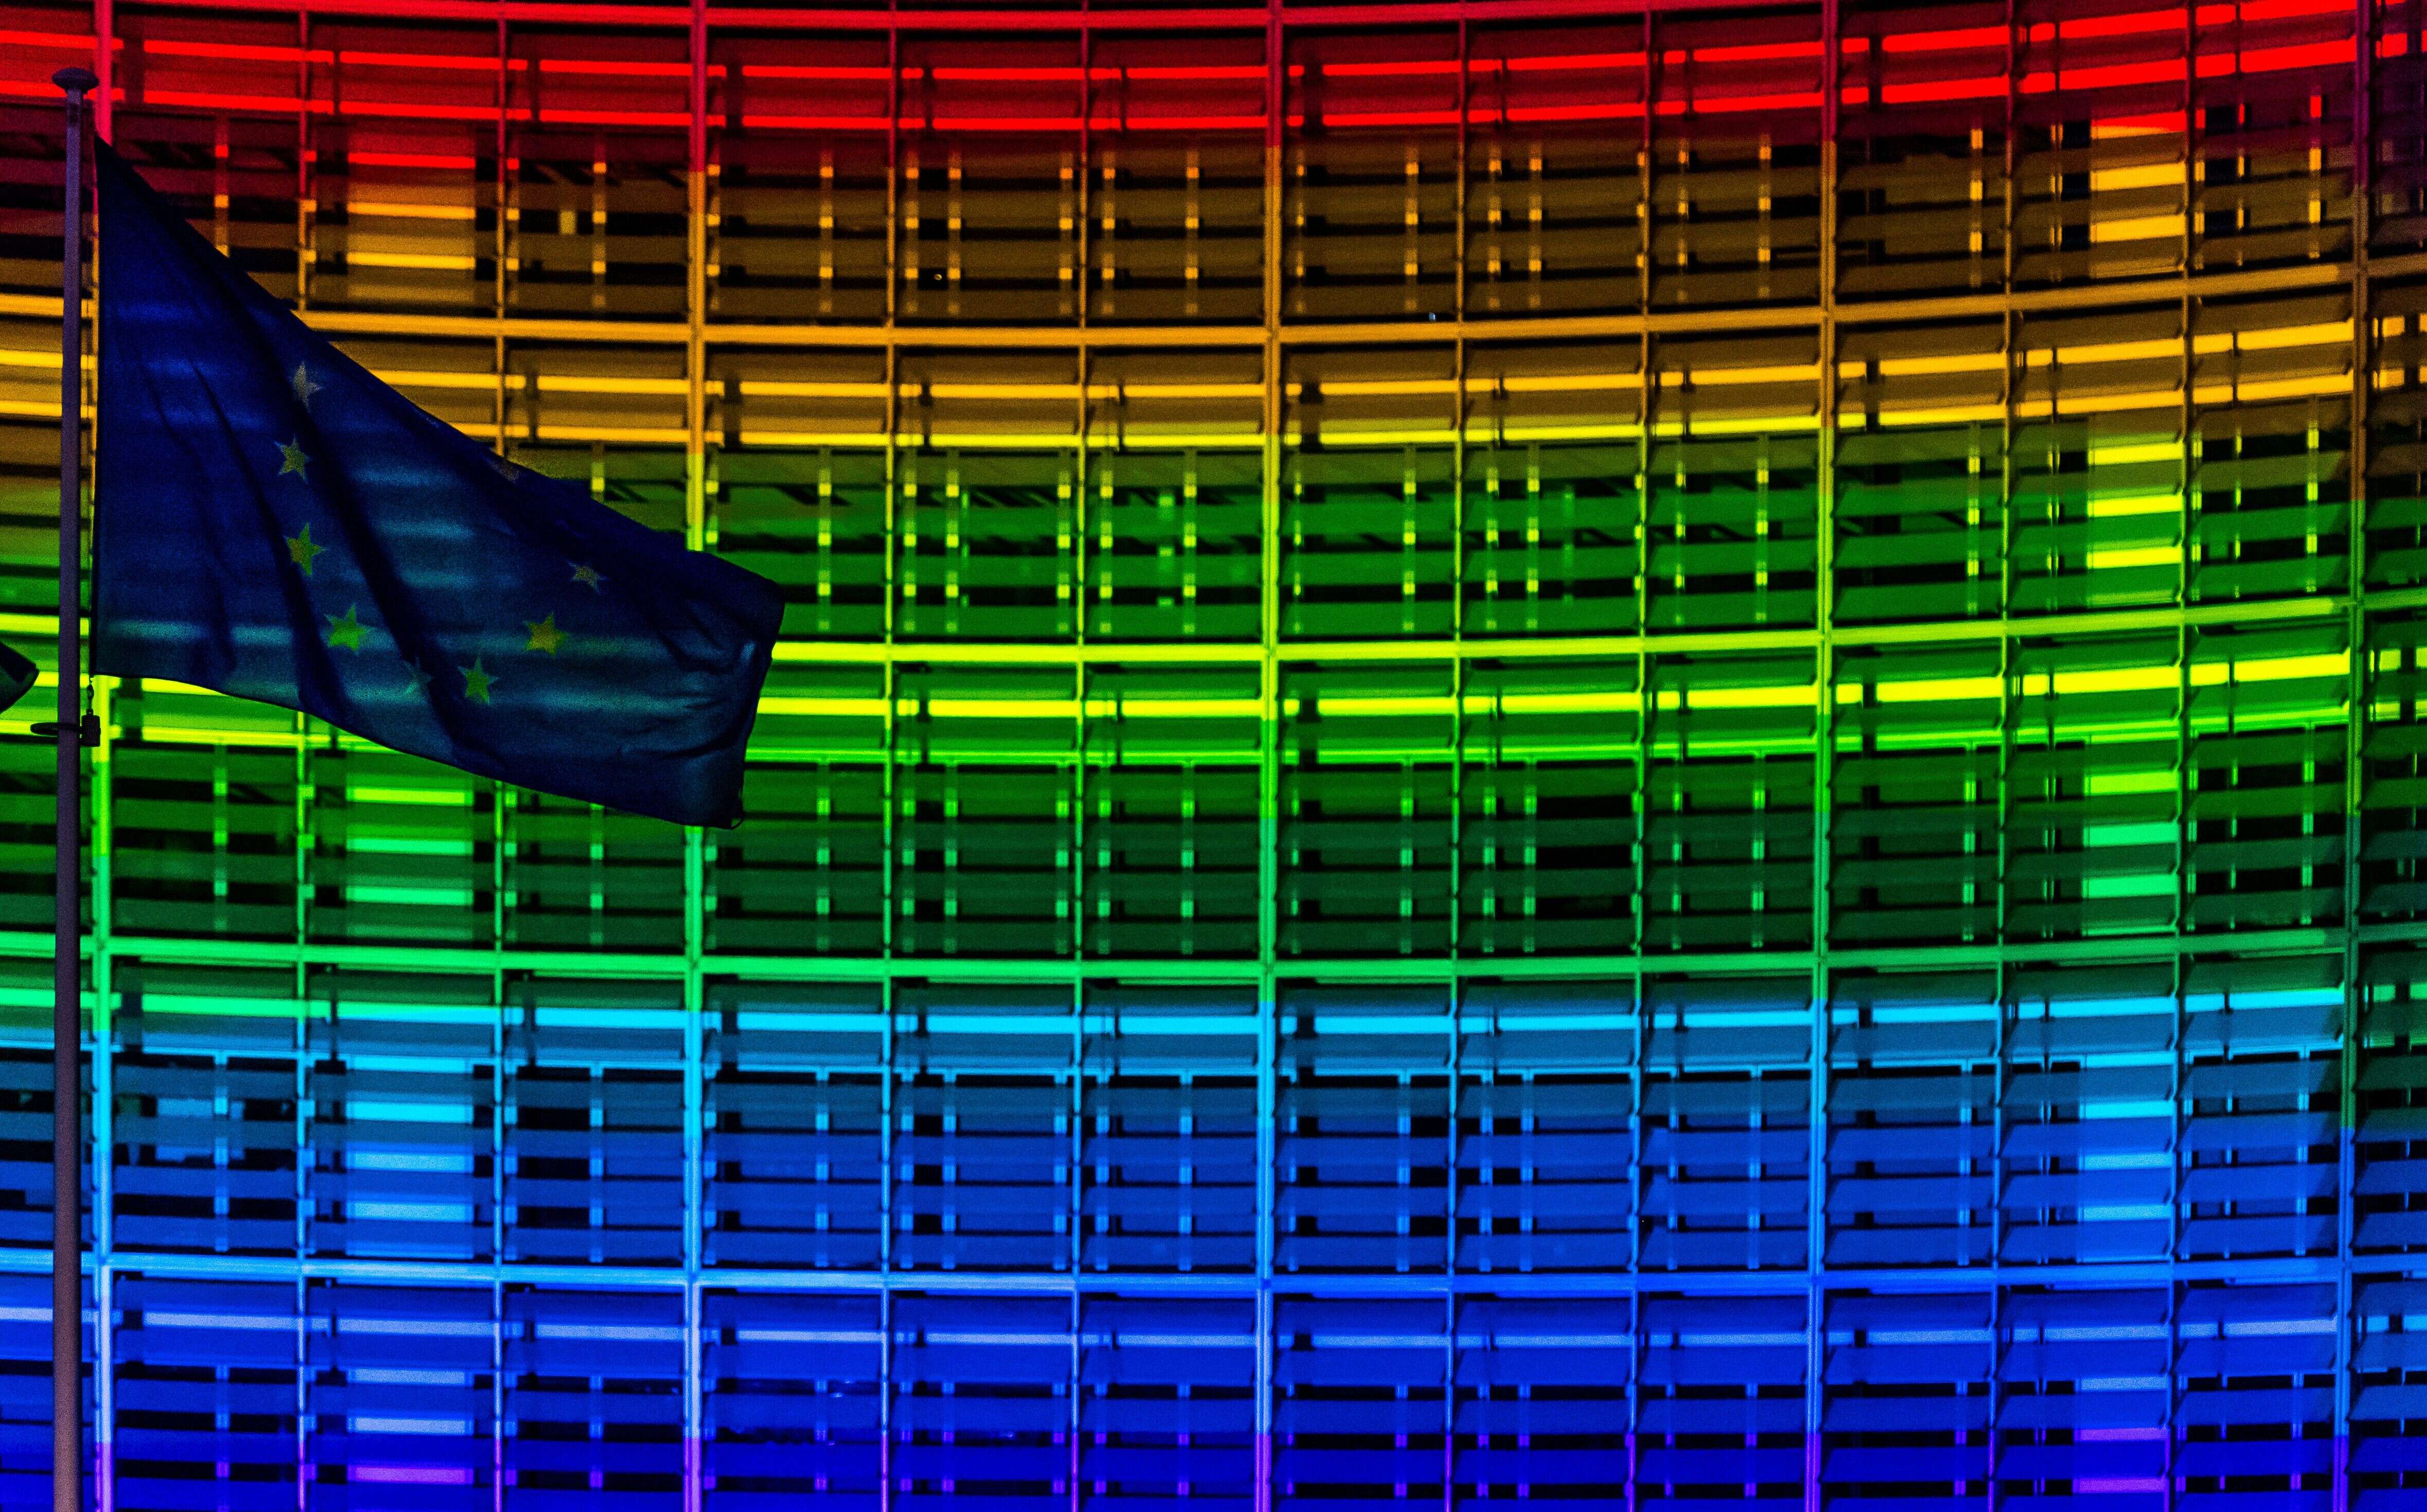 Les couleurs LGBT projetées sur les locaux de la commission européenne au mois de mai (illustration)